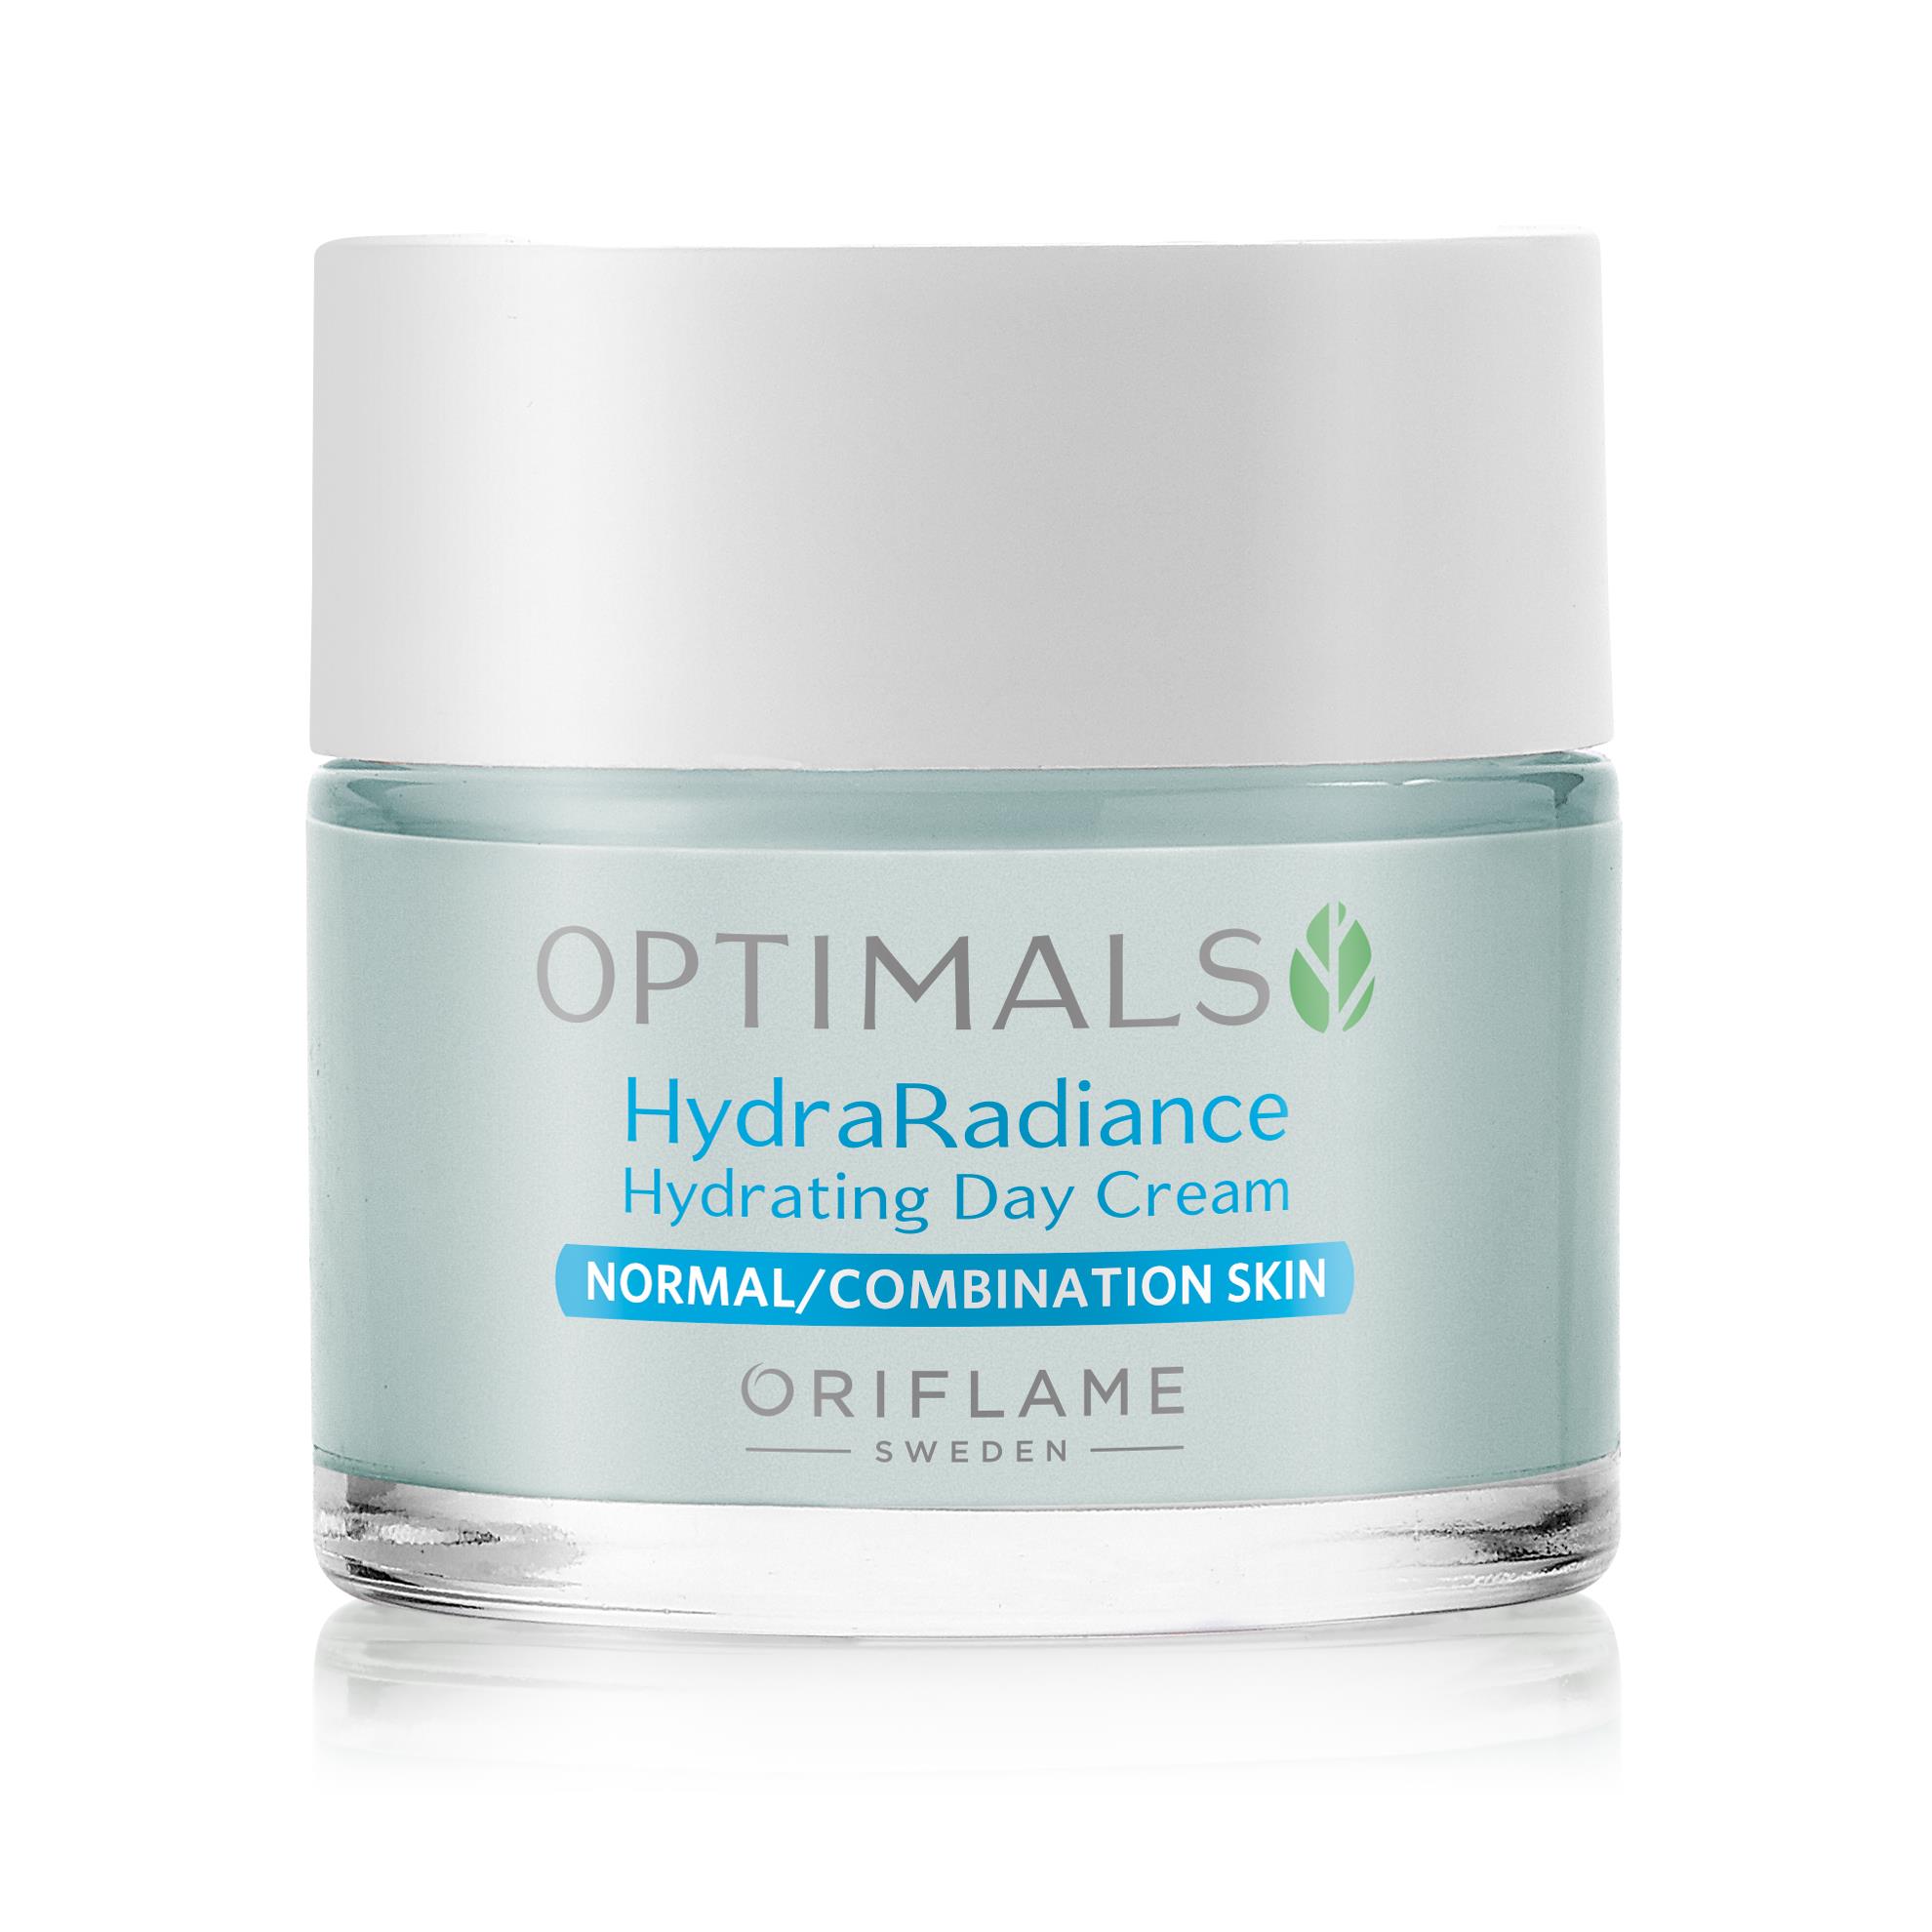 Увлажняющий дневной крем для нормальной/комбинированной кожи Optimals Hydra Radiance (32462)